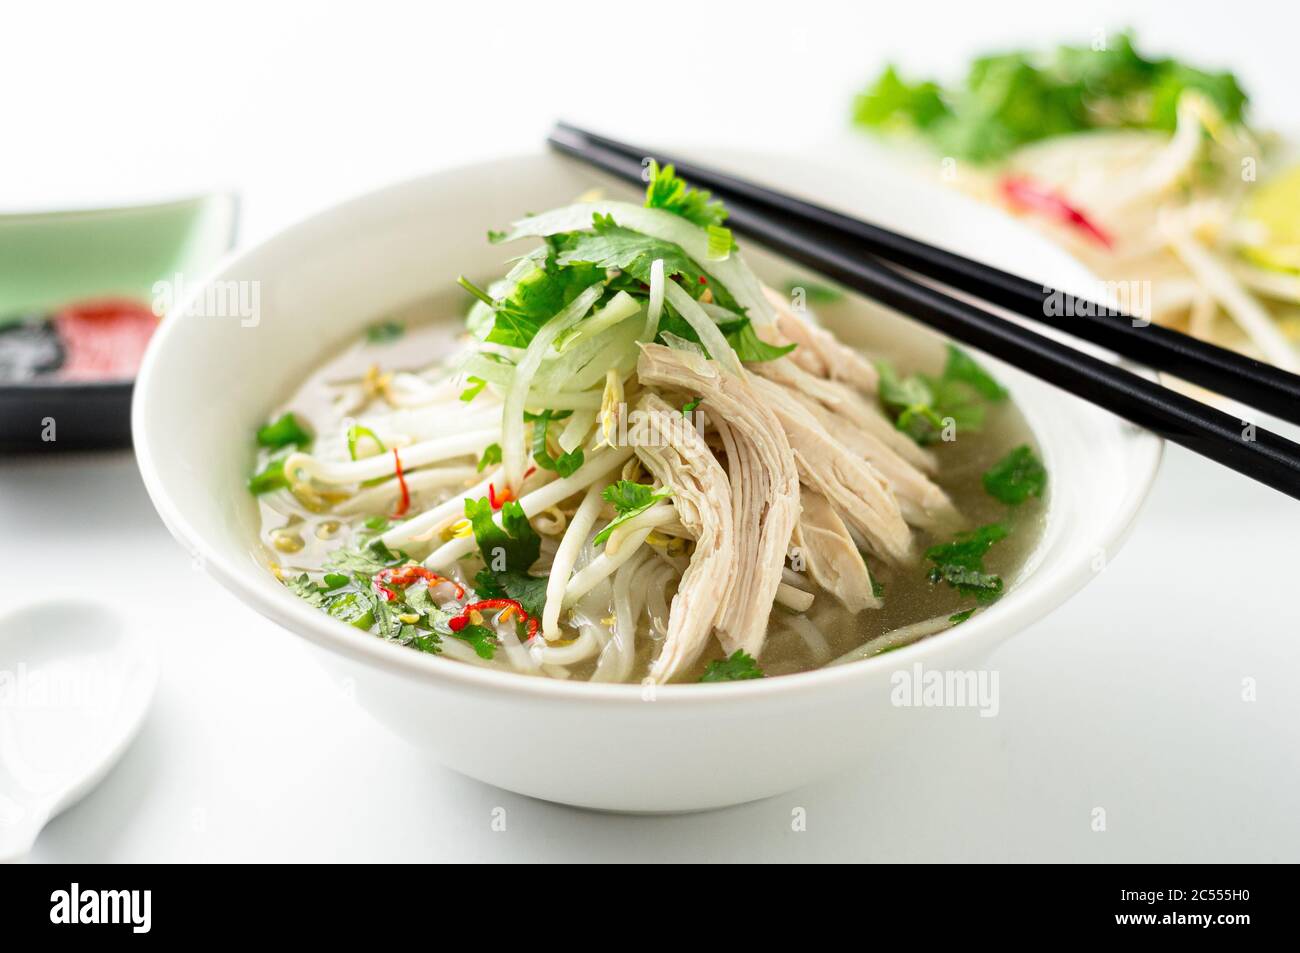 Vietnamesische Pho Nudelsuppe Schüssel Nahaufnahme. Diese Pho-Suppe ist ein klassisches, authentisches vietnamesisches Essen und wird in einer weißen Schüssel mit Hühnerbrühe und viel f serviert Stockfoto